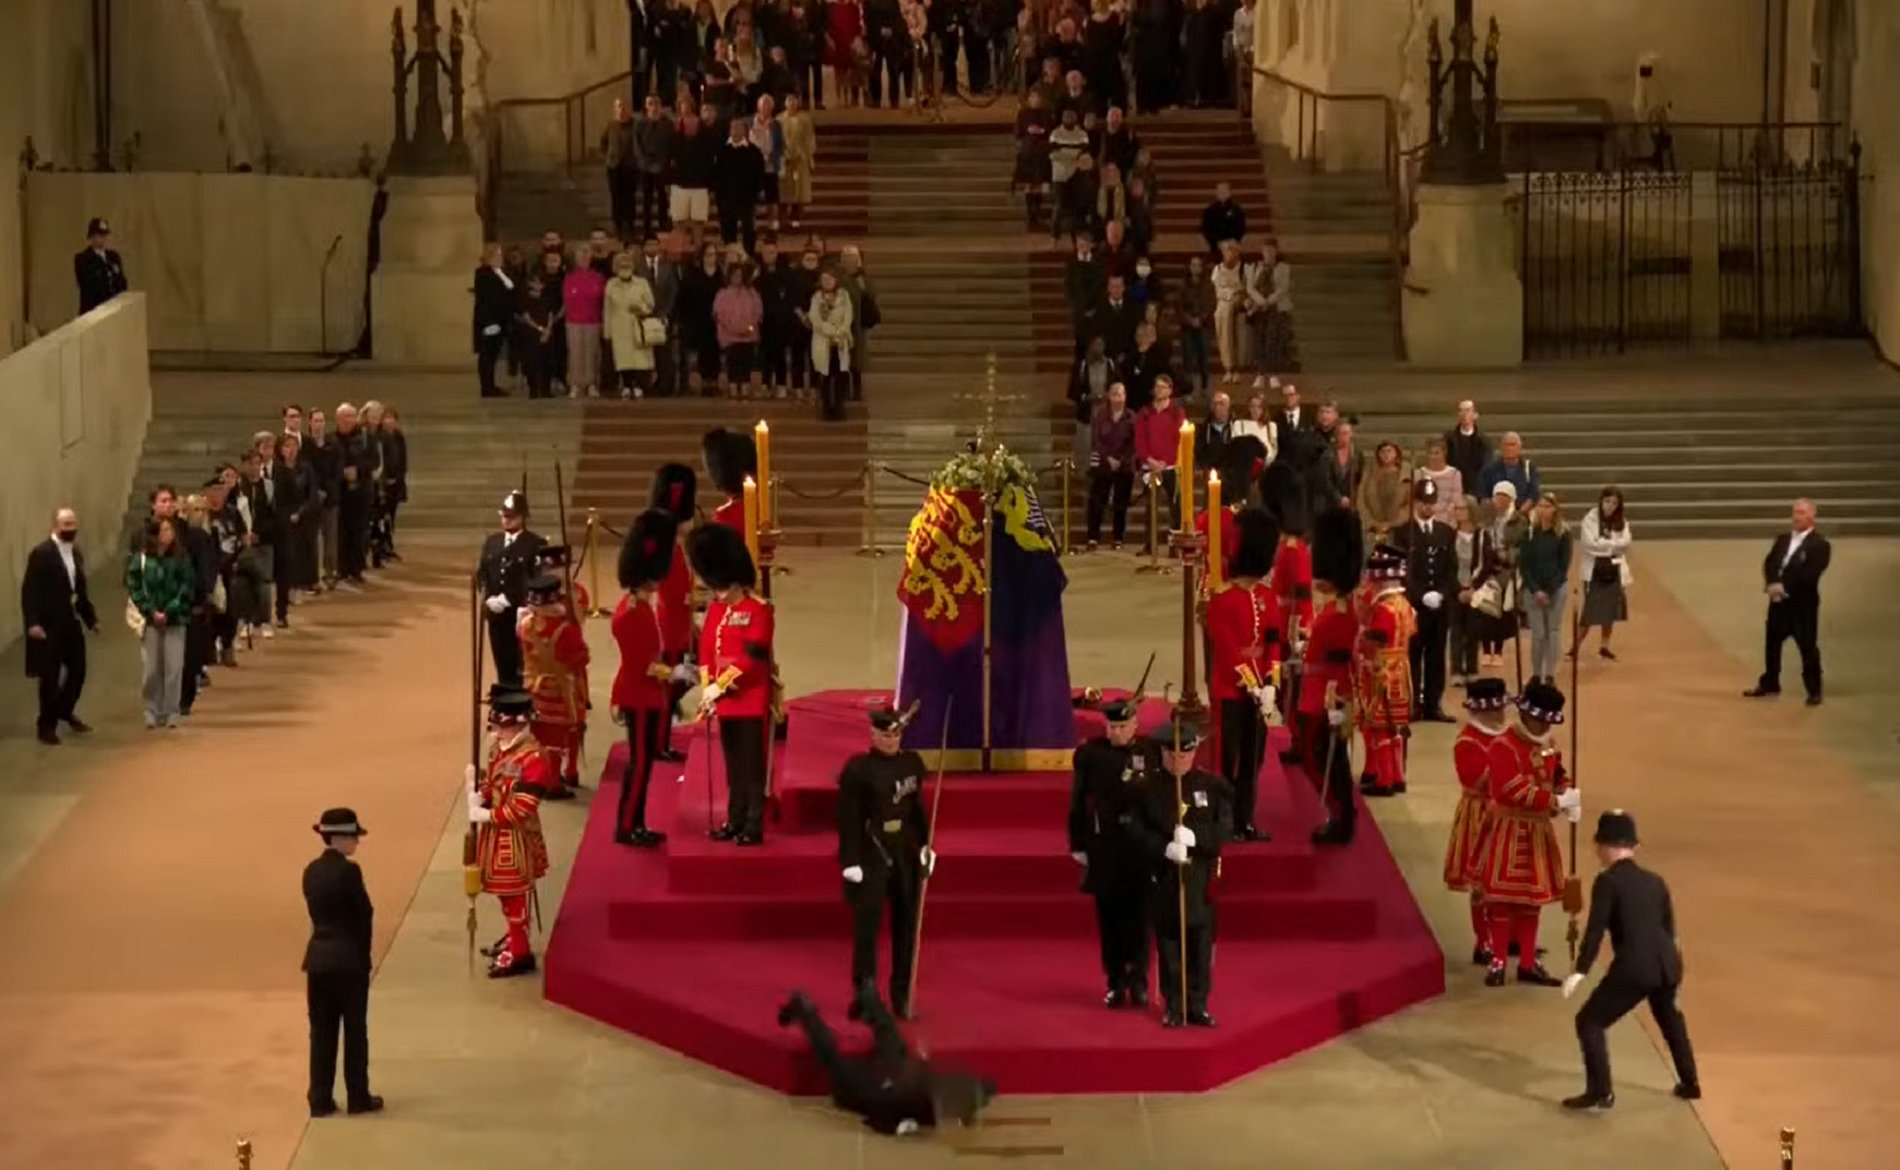 La duresa de vigilar el fèretre de la reina Elisabet II: incident a Westminster